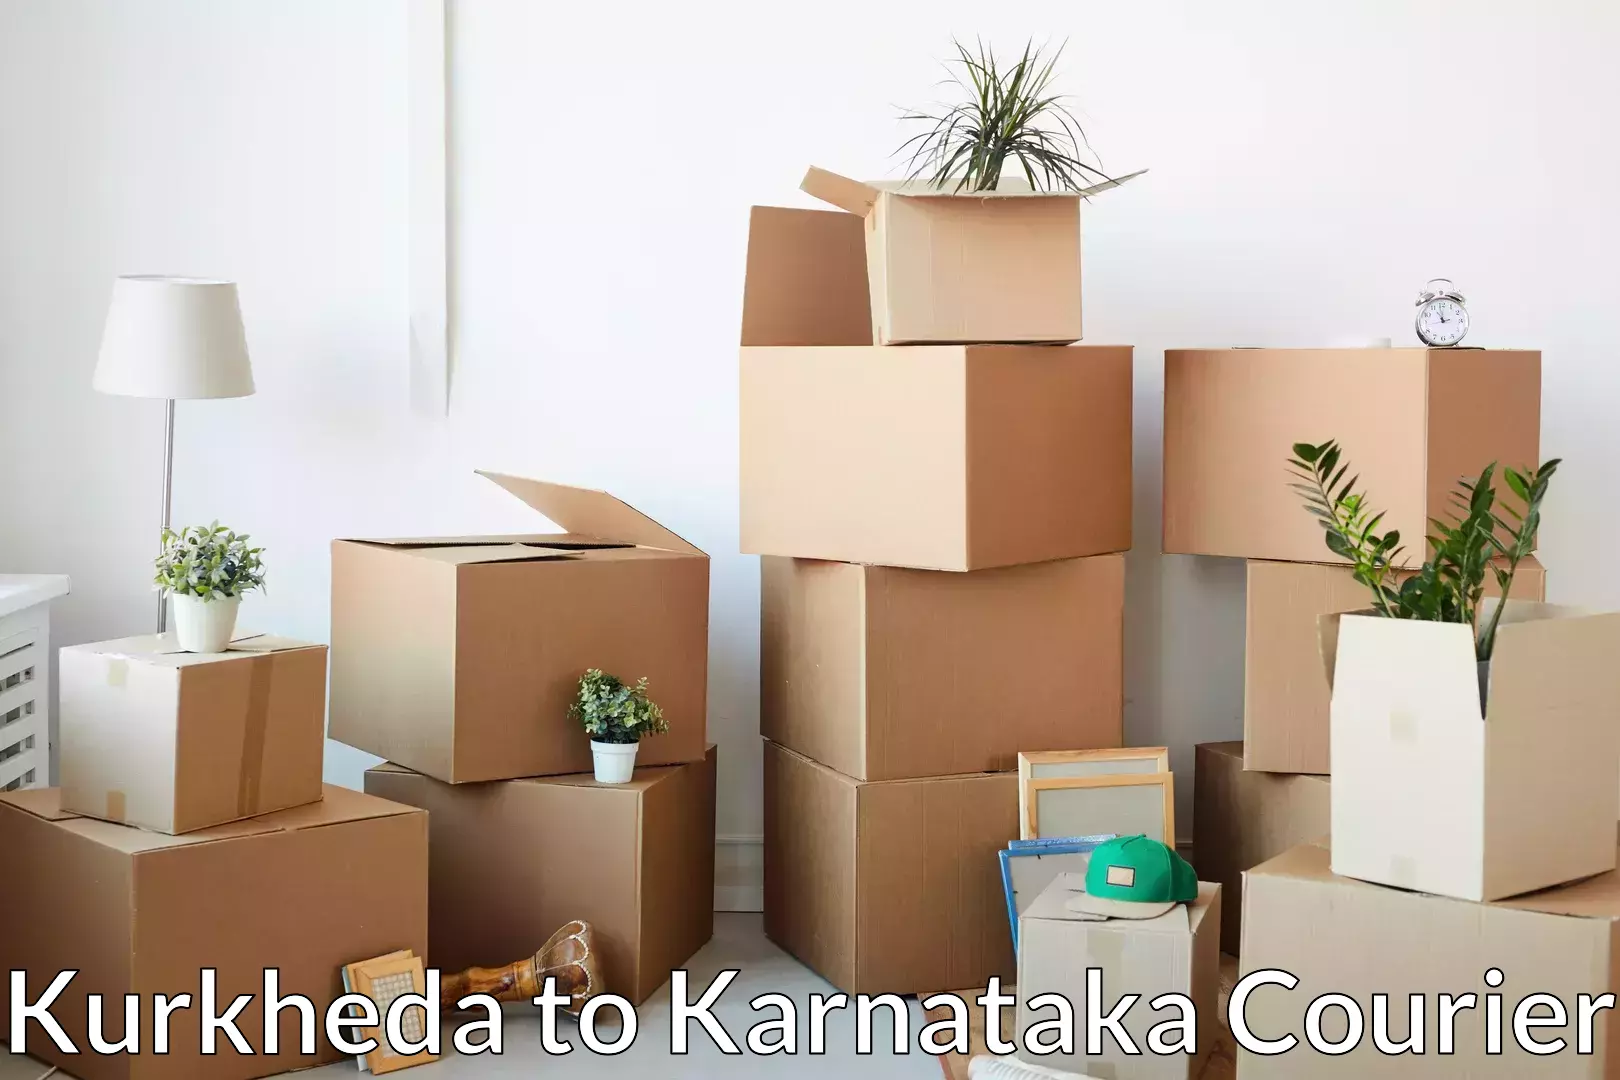 Furniture moving experts Kurkheda to Chikkanayakanahalli